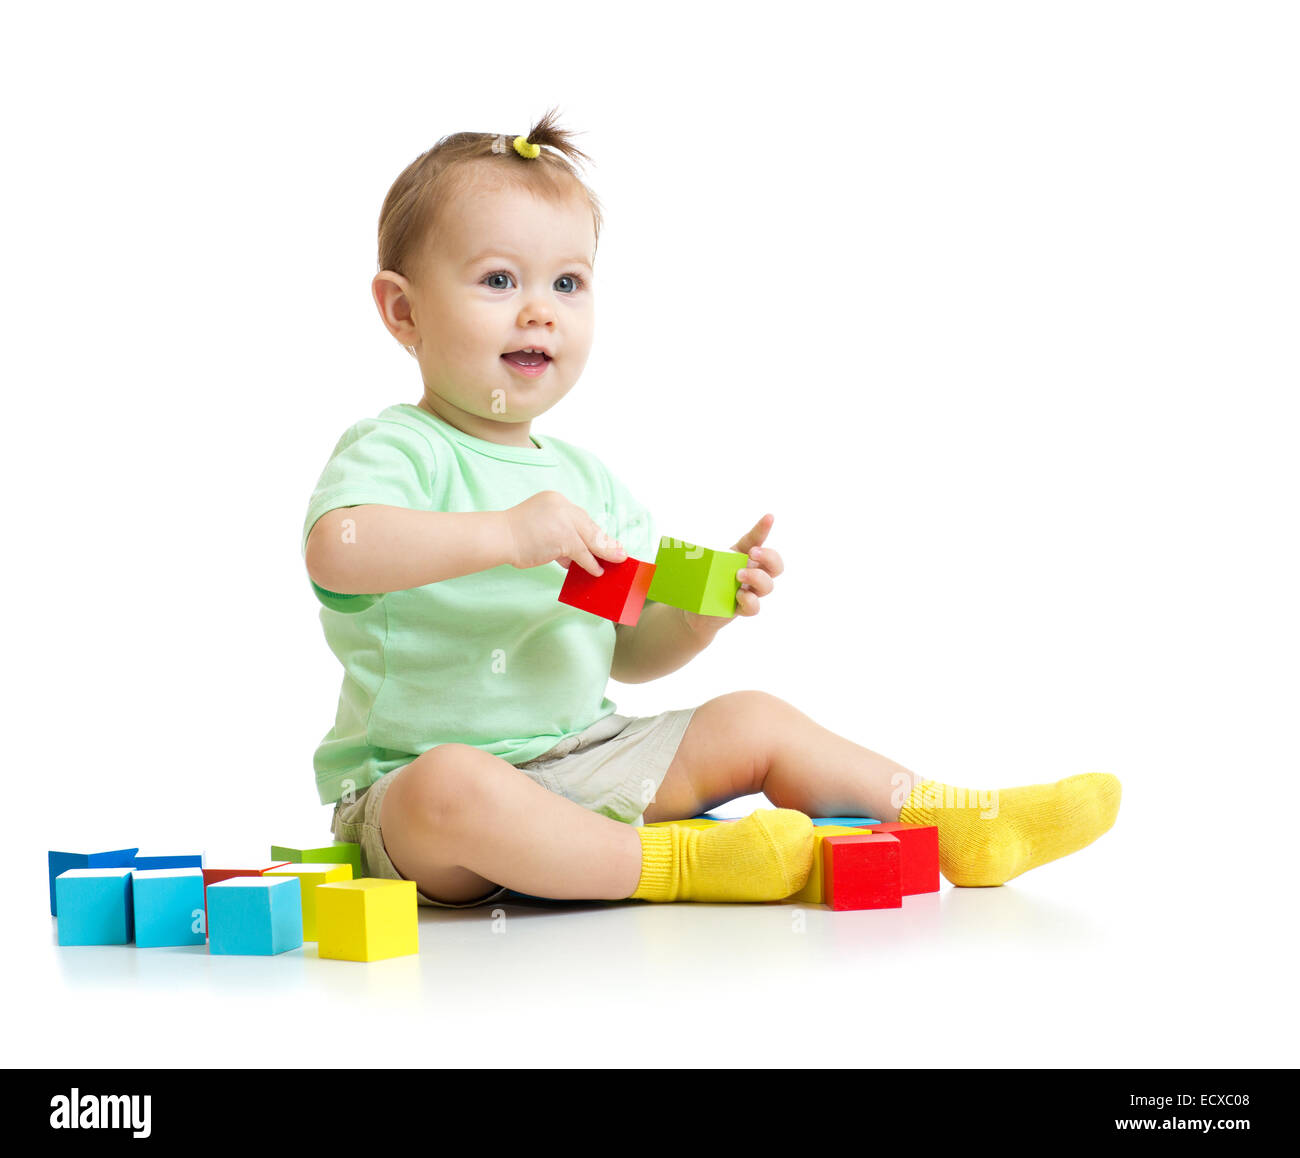 Bébé jouant avec des blocs de construction en bois isolé Banque D'Images